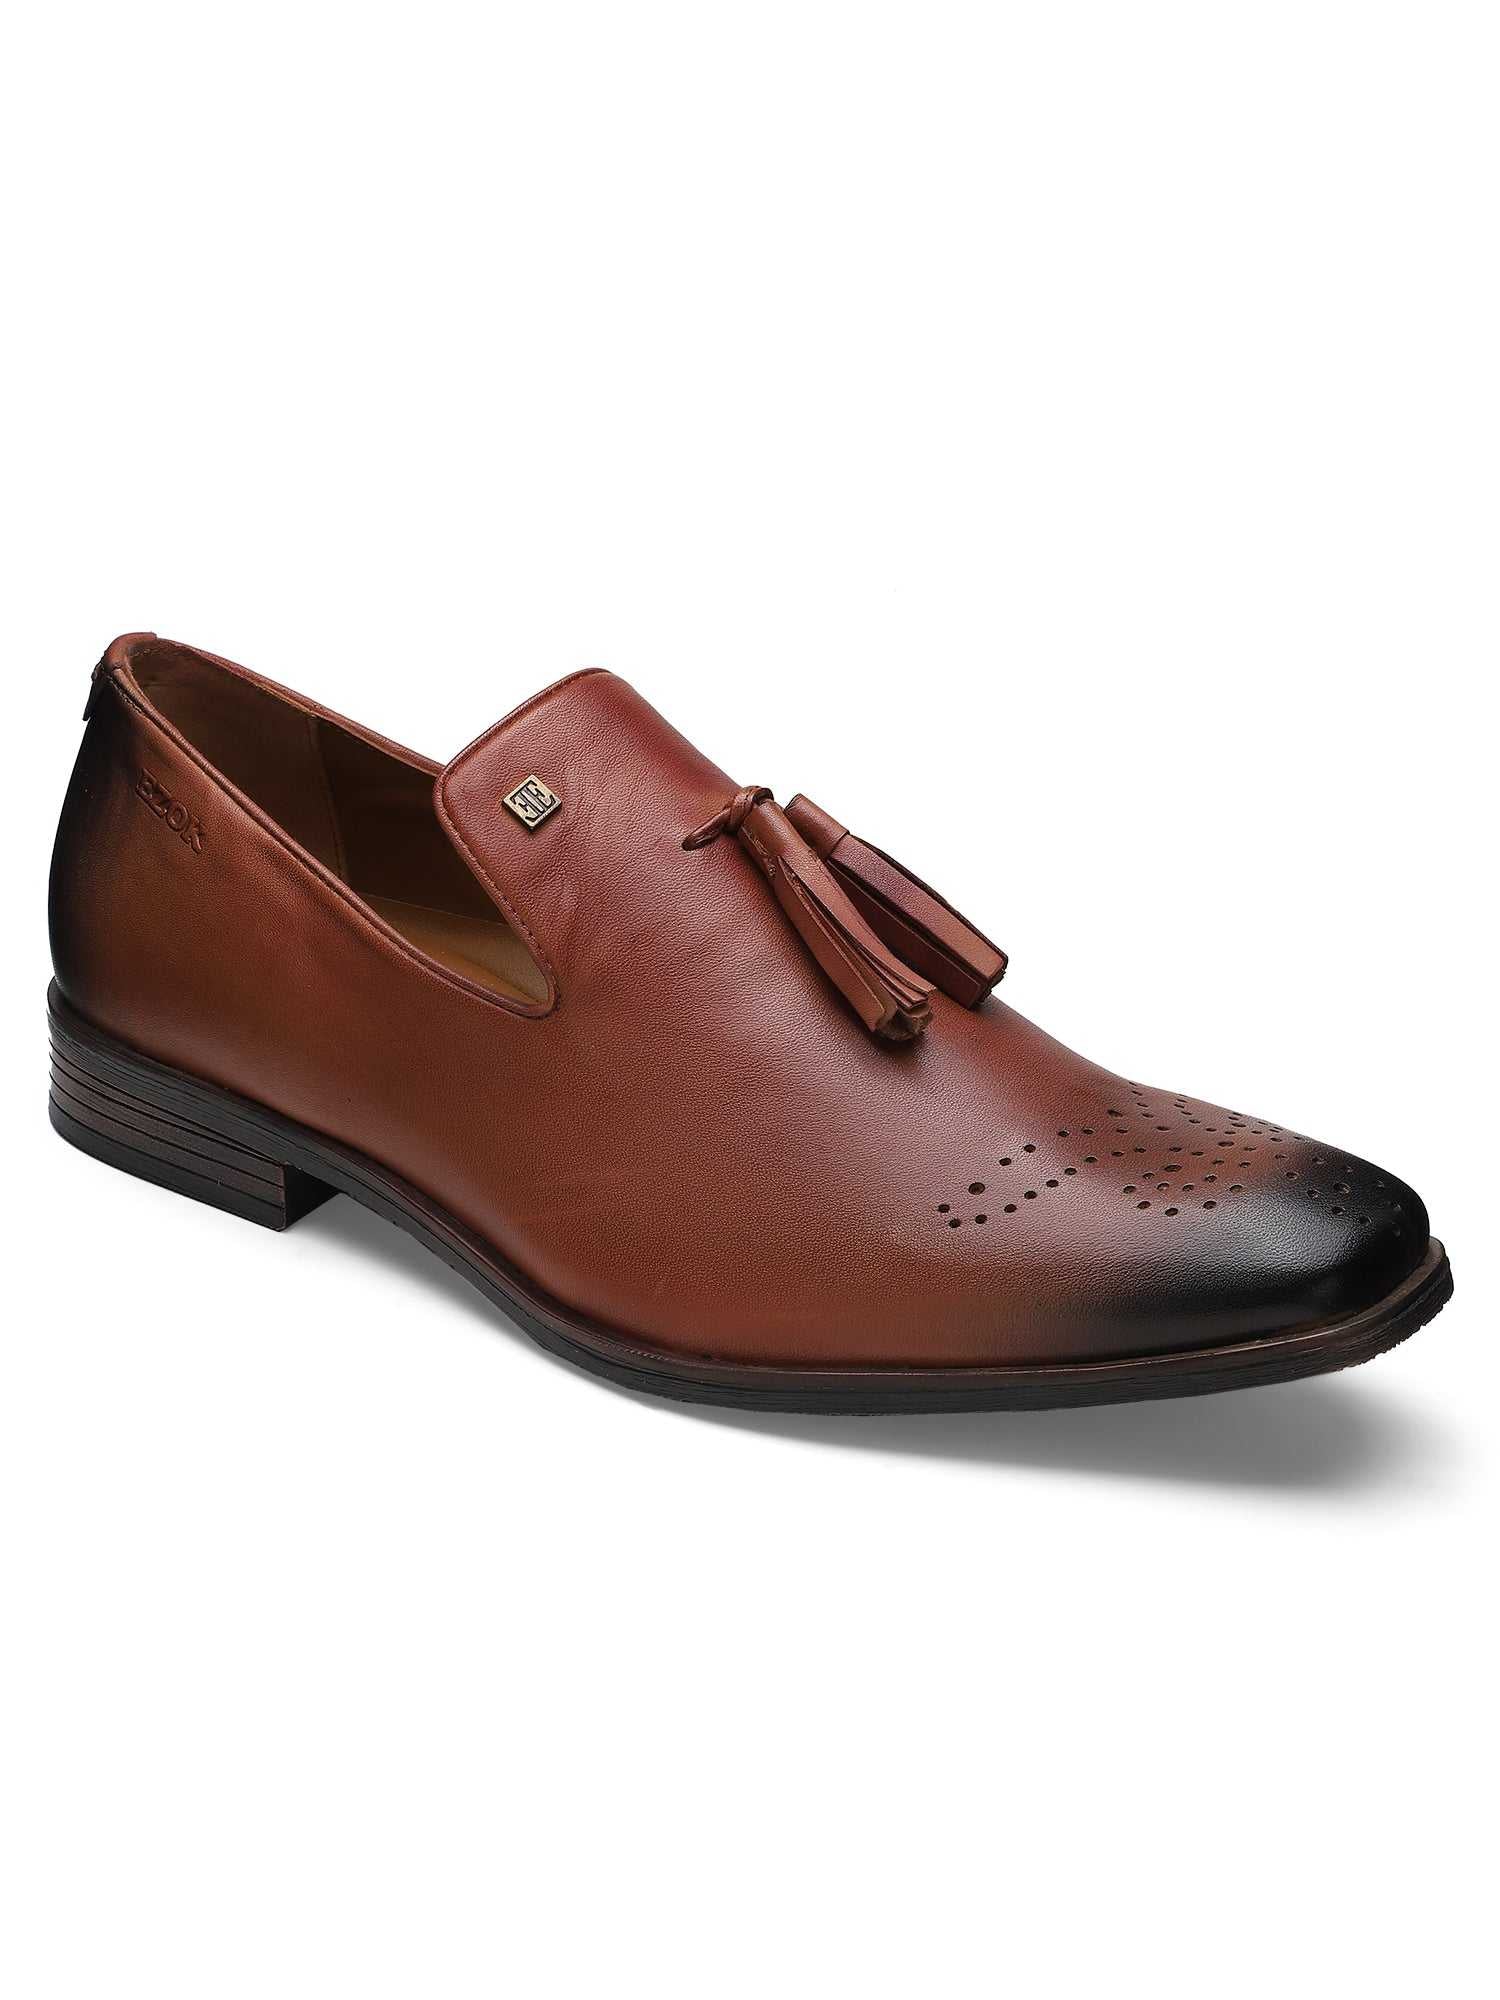 Ezok Men Bordo Leather Loafers Shoes 2052